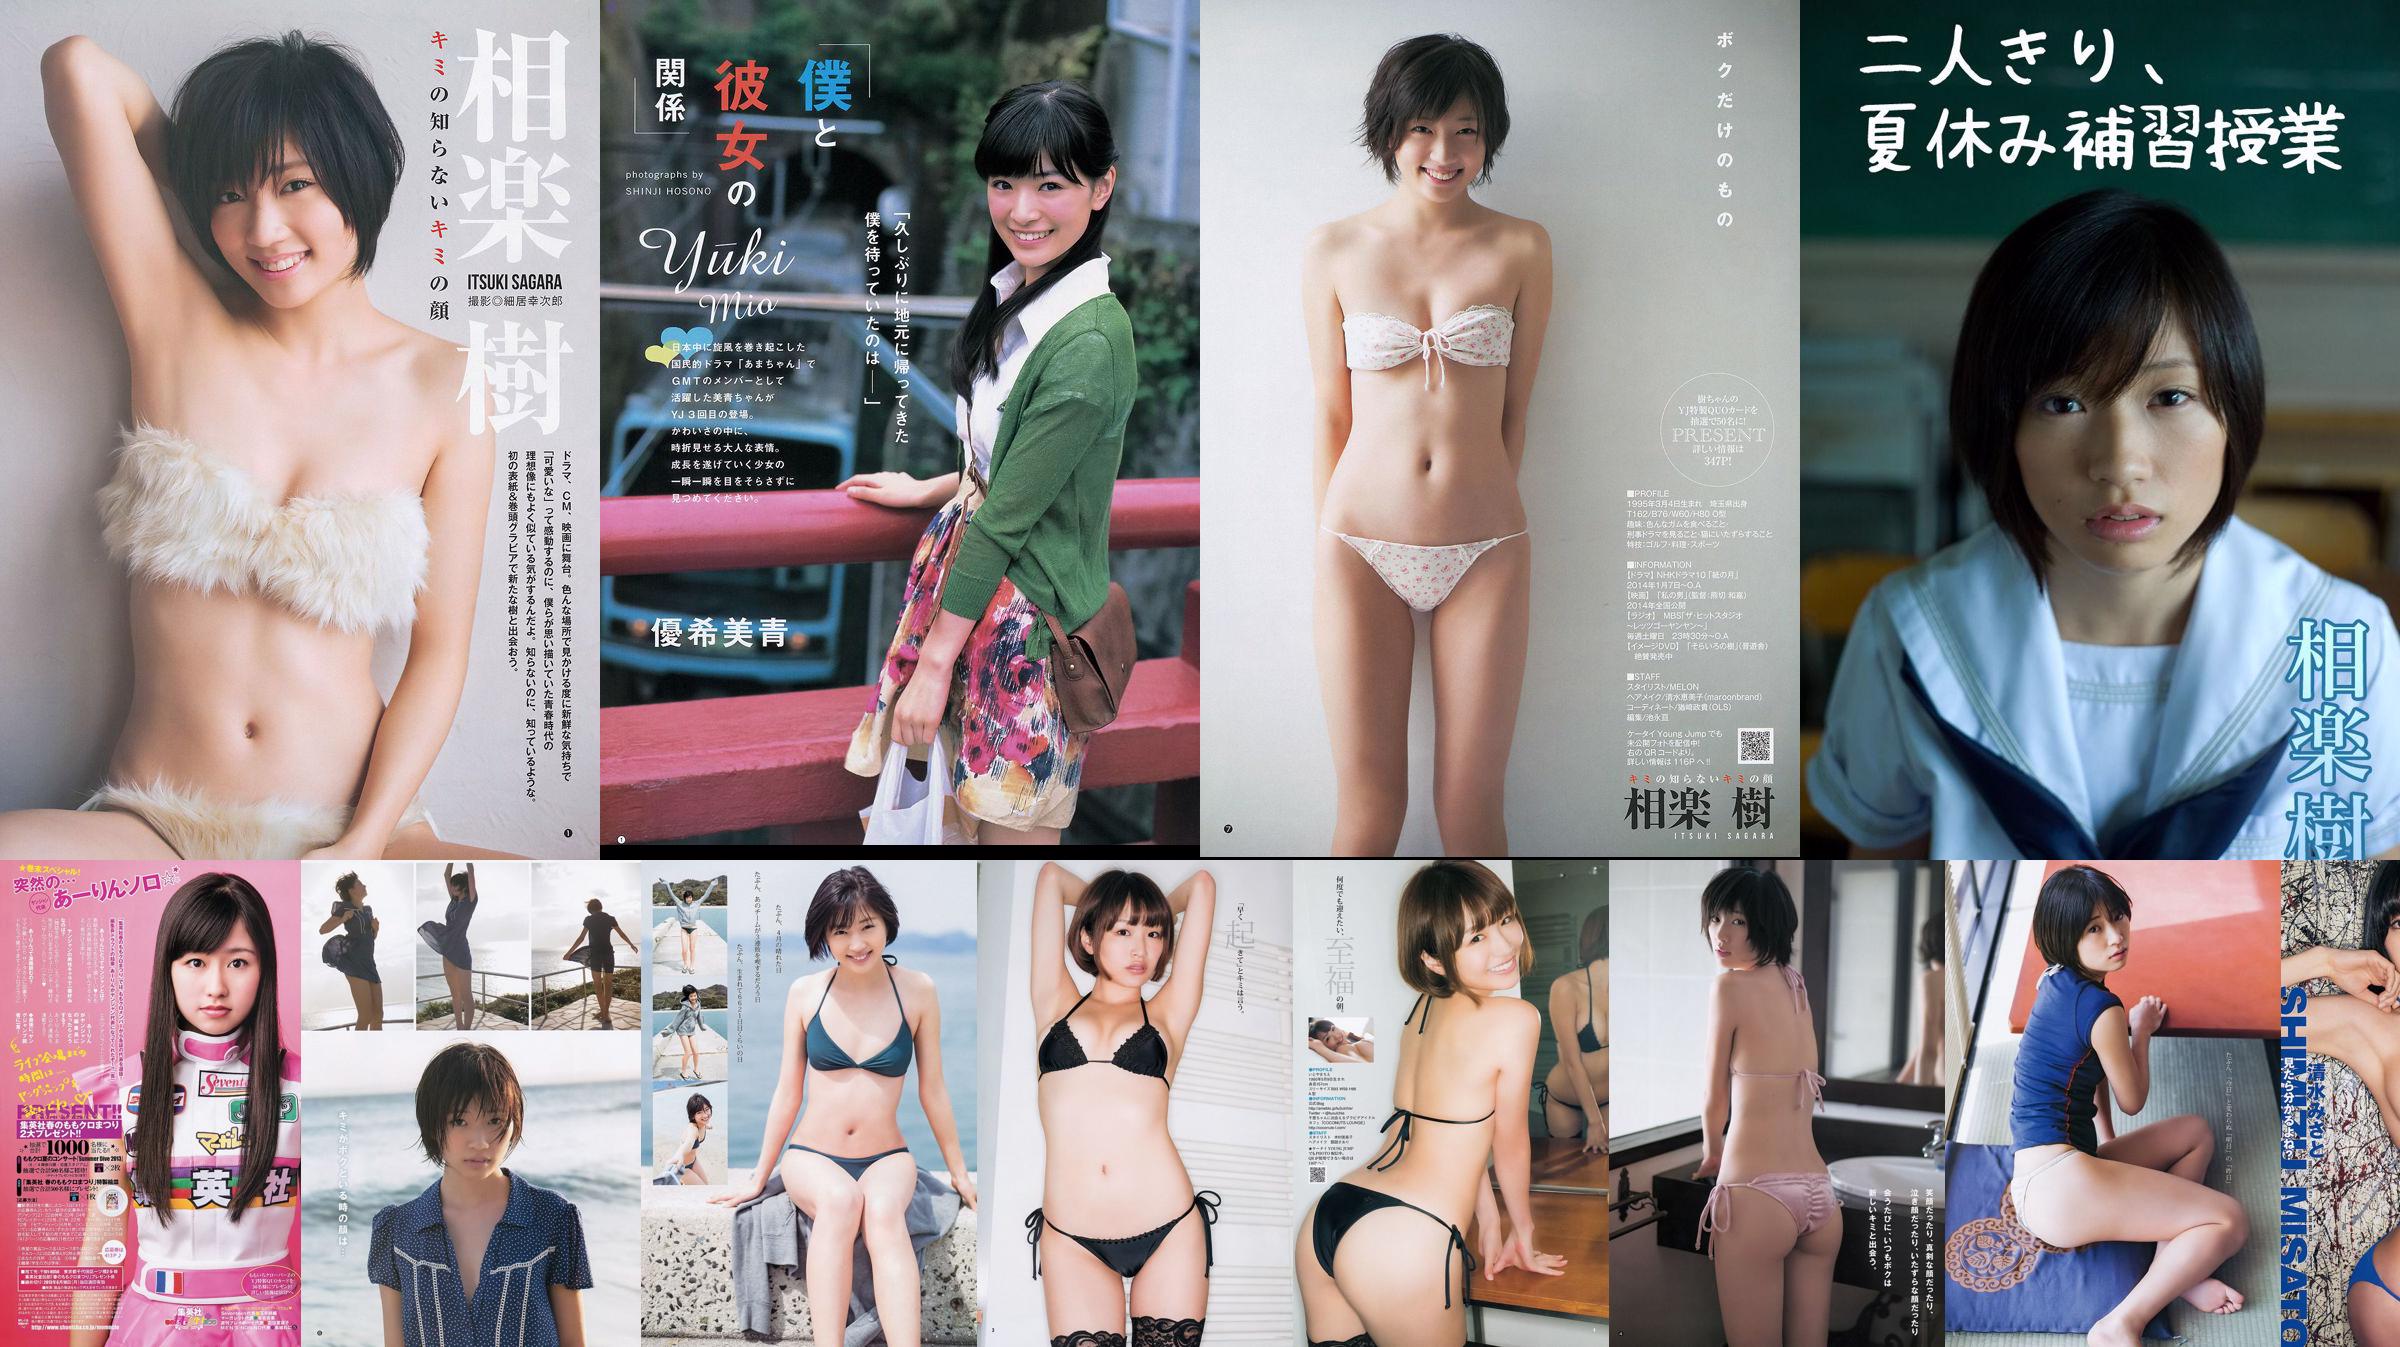 Sagaraki Chie Itoyama Yuki Mio [Weekly Young Jump] 2013 No.50照片 No.a79f9a 第1頁